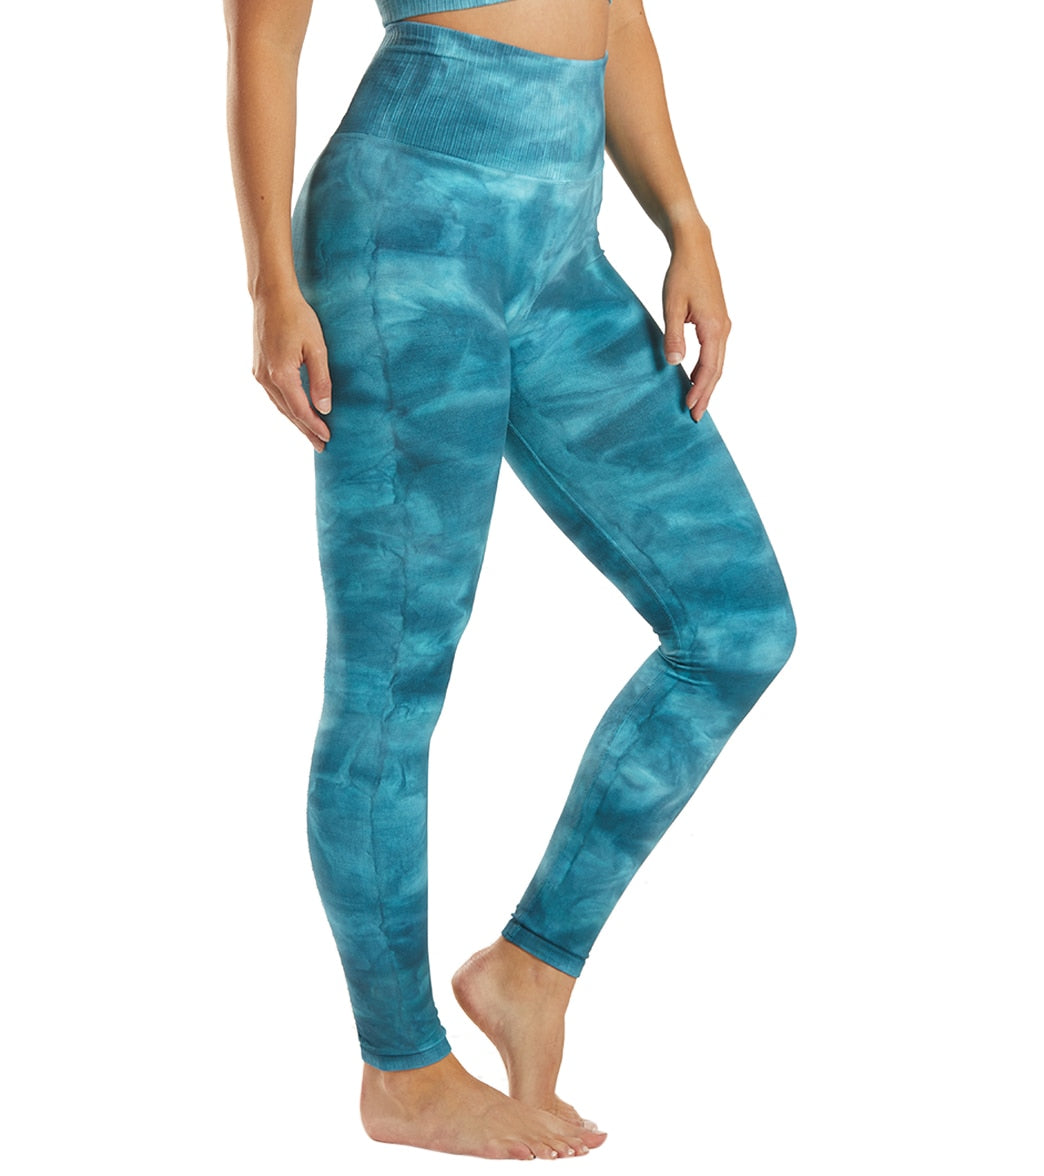 Waterfall Lucy Blue Tie Dye Printed Leggings Yoga Pants  Women  Pineapple  Clothing